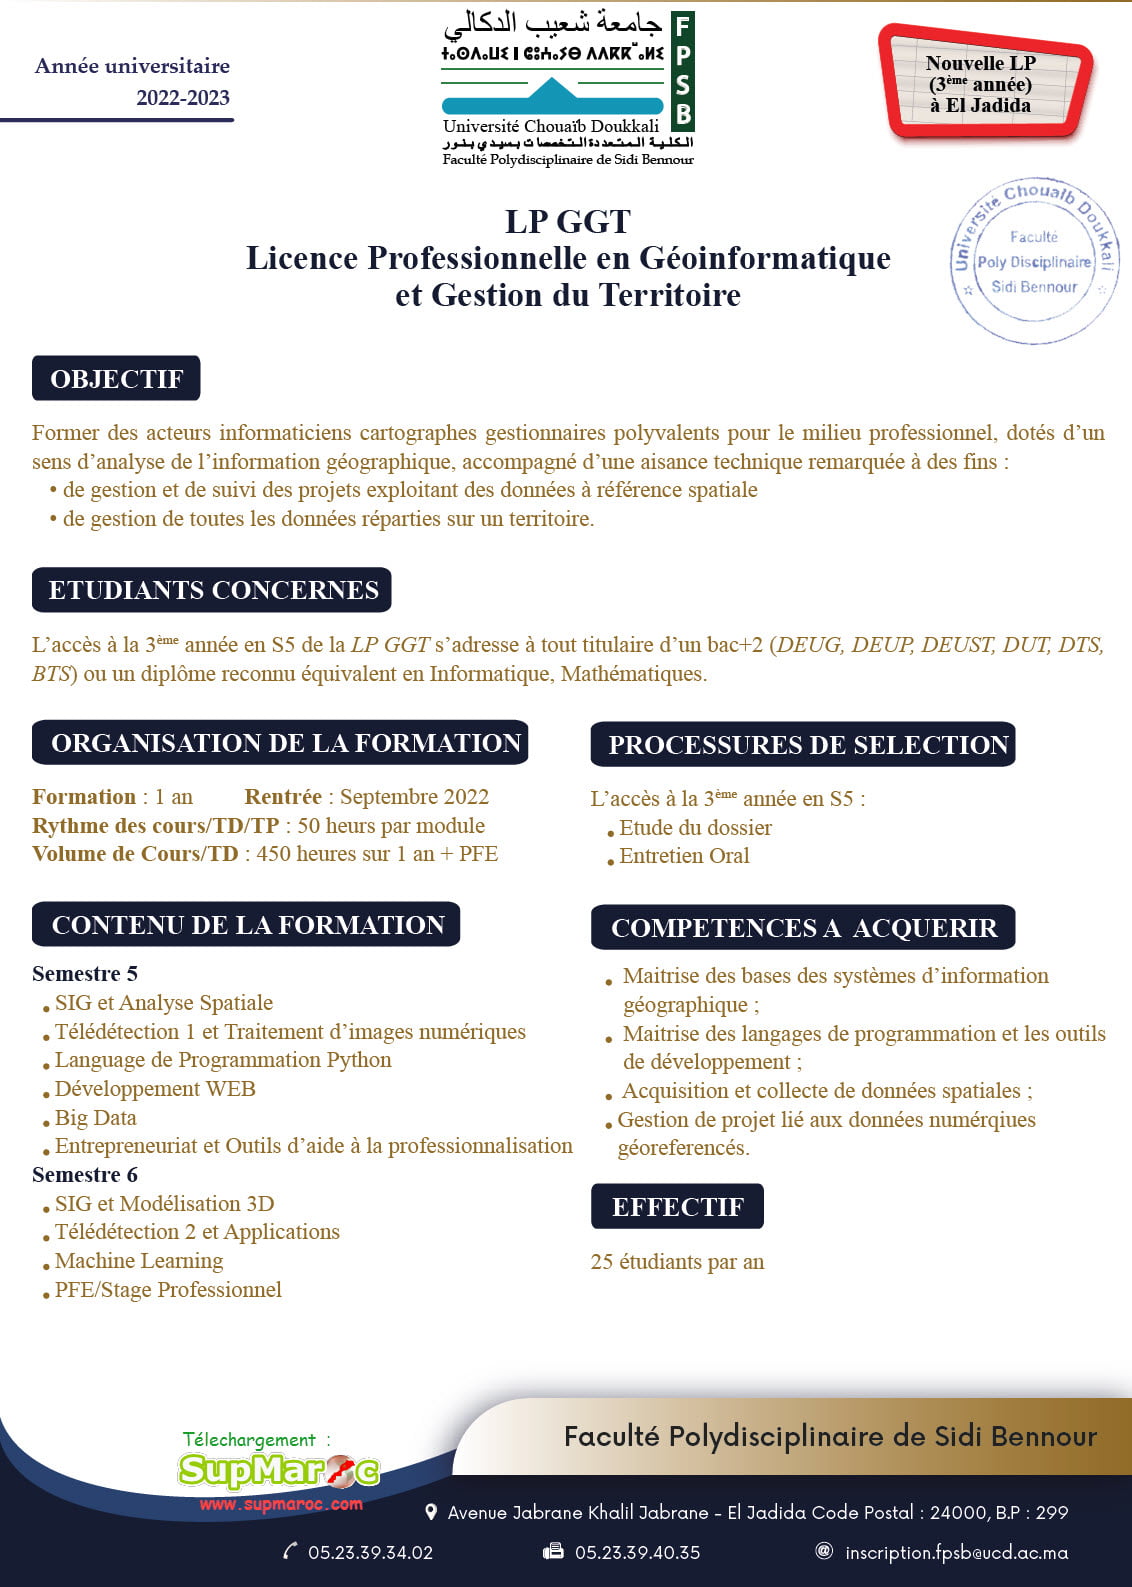 FP Faculté Polydisciplinaire Sidi Bennour LP S5 Licence Professionnelle 2022